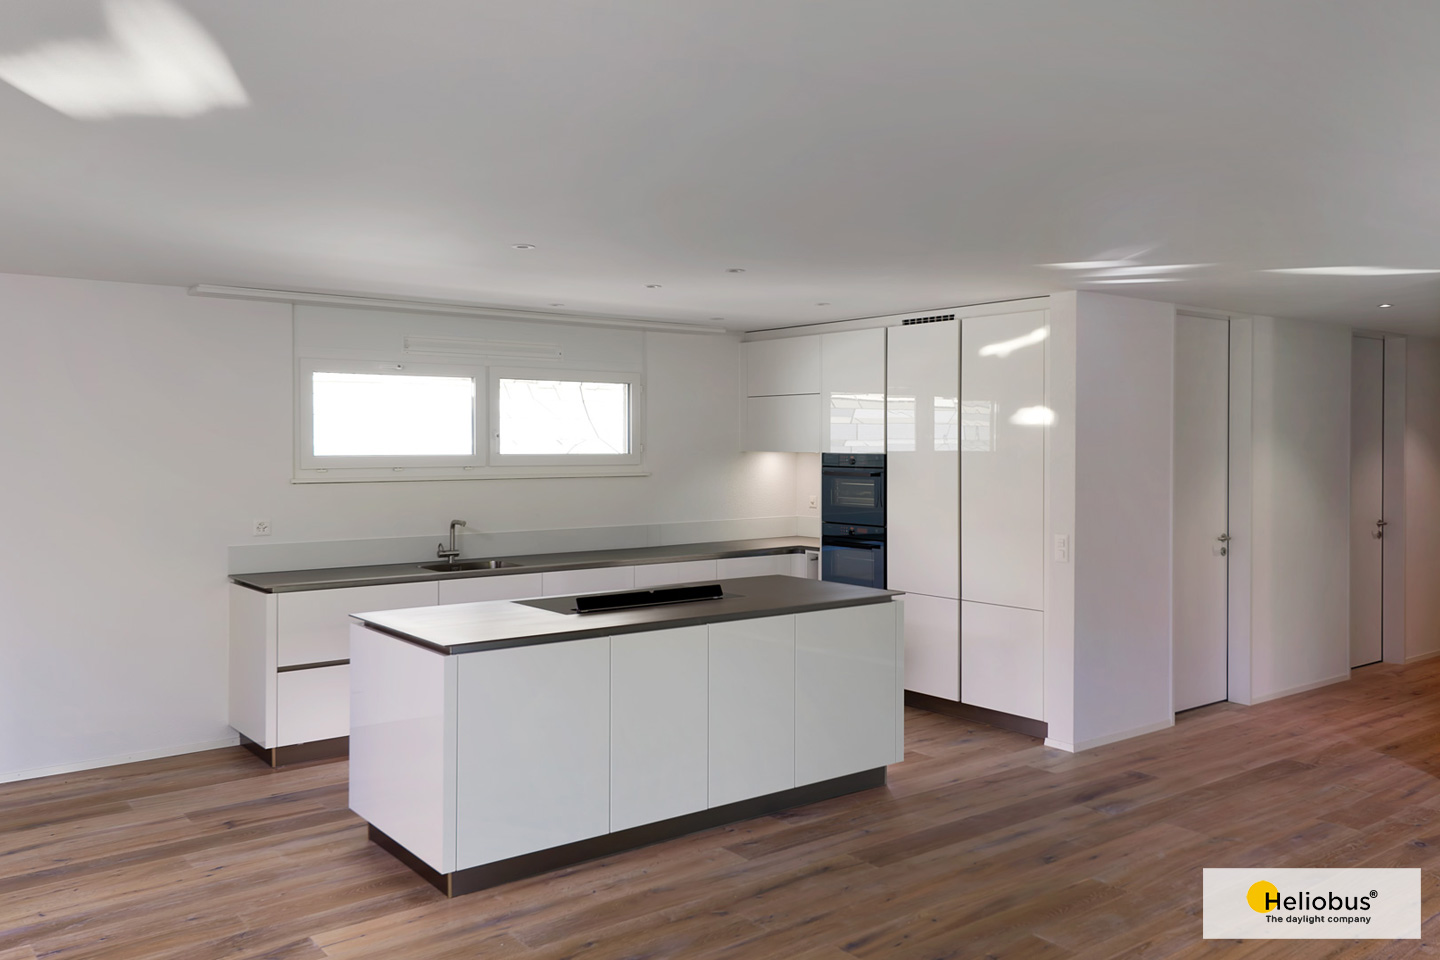 Innenaufnahme einer Küche die mit mehr Licht versorgt wird dank Heliobus Licht Spiegelschacht System